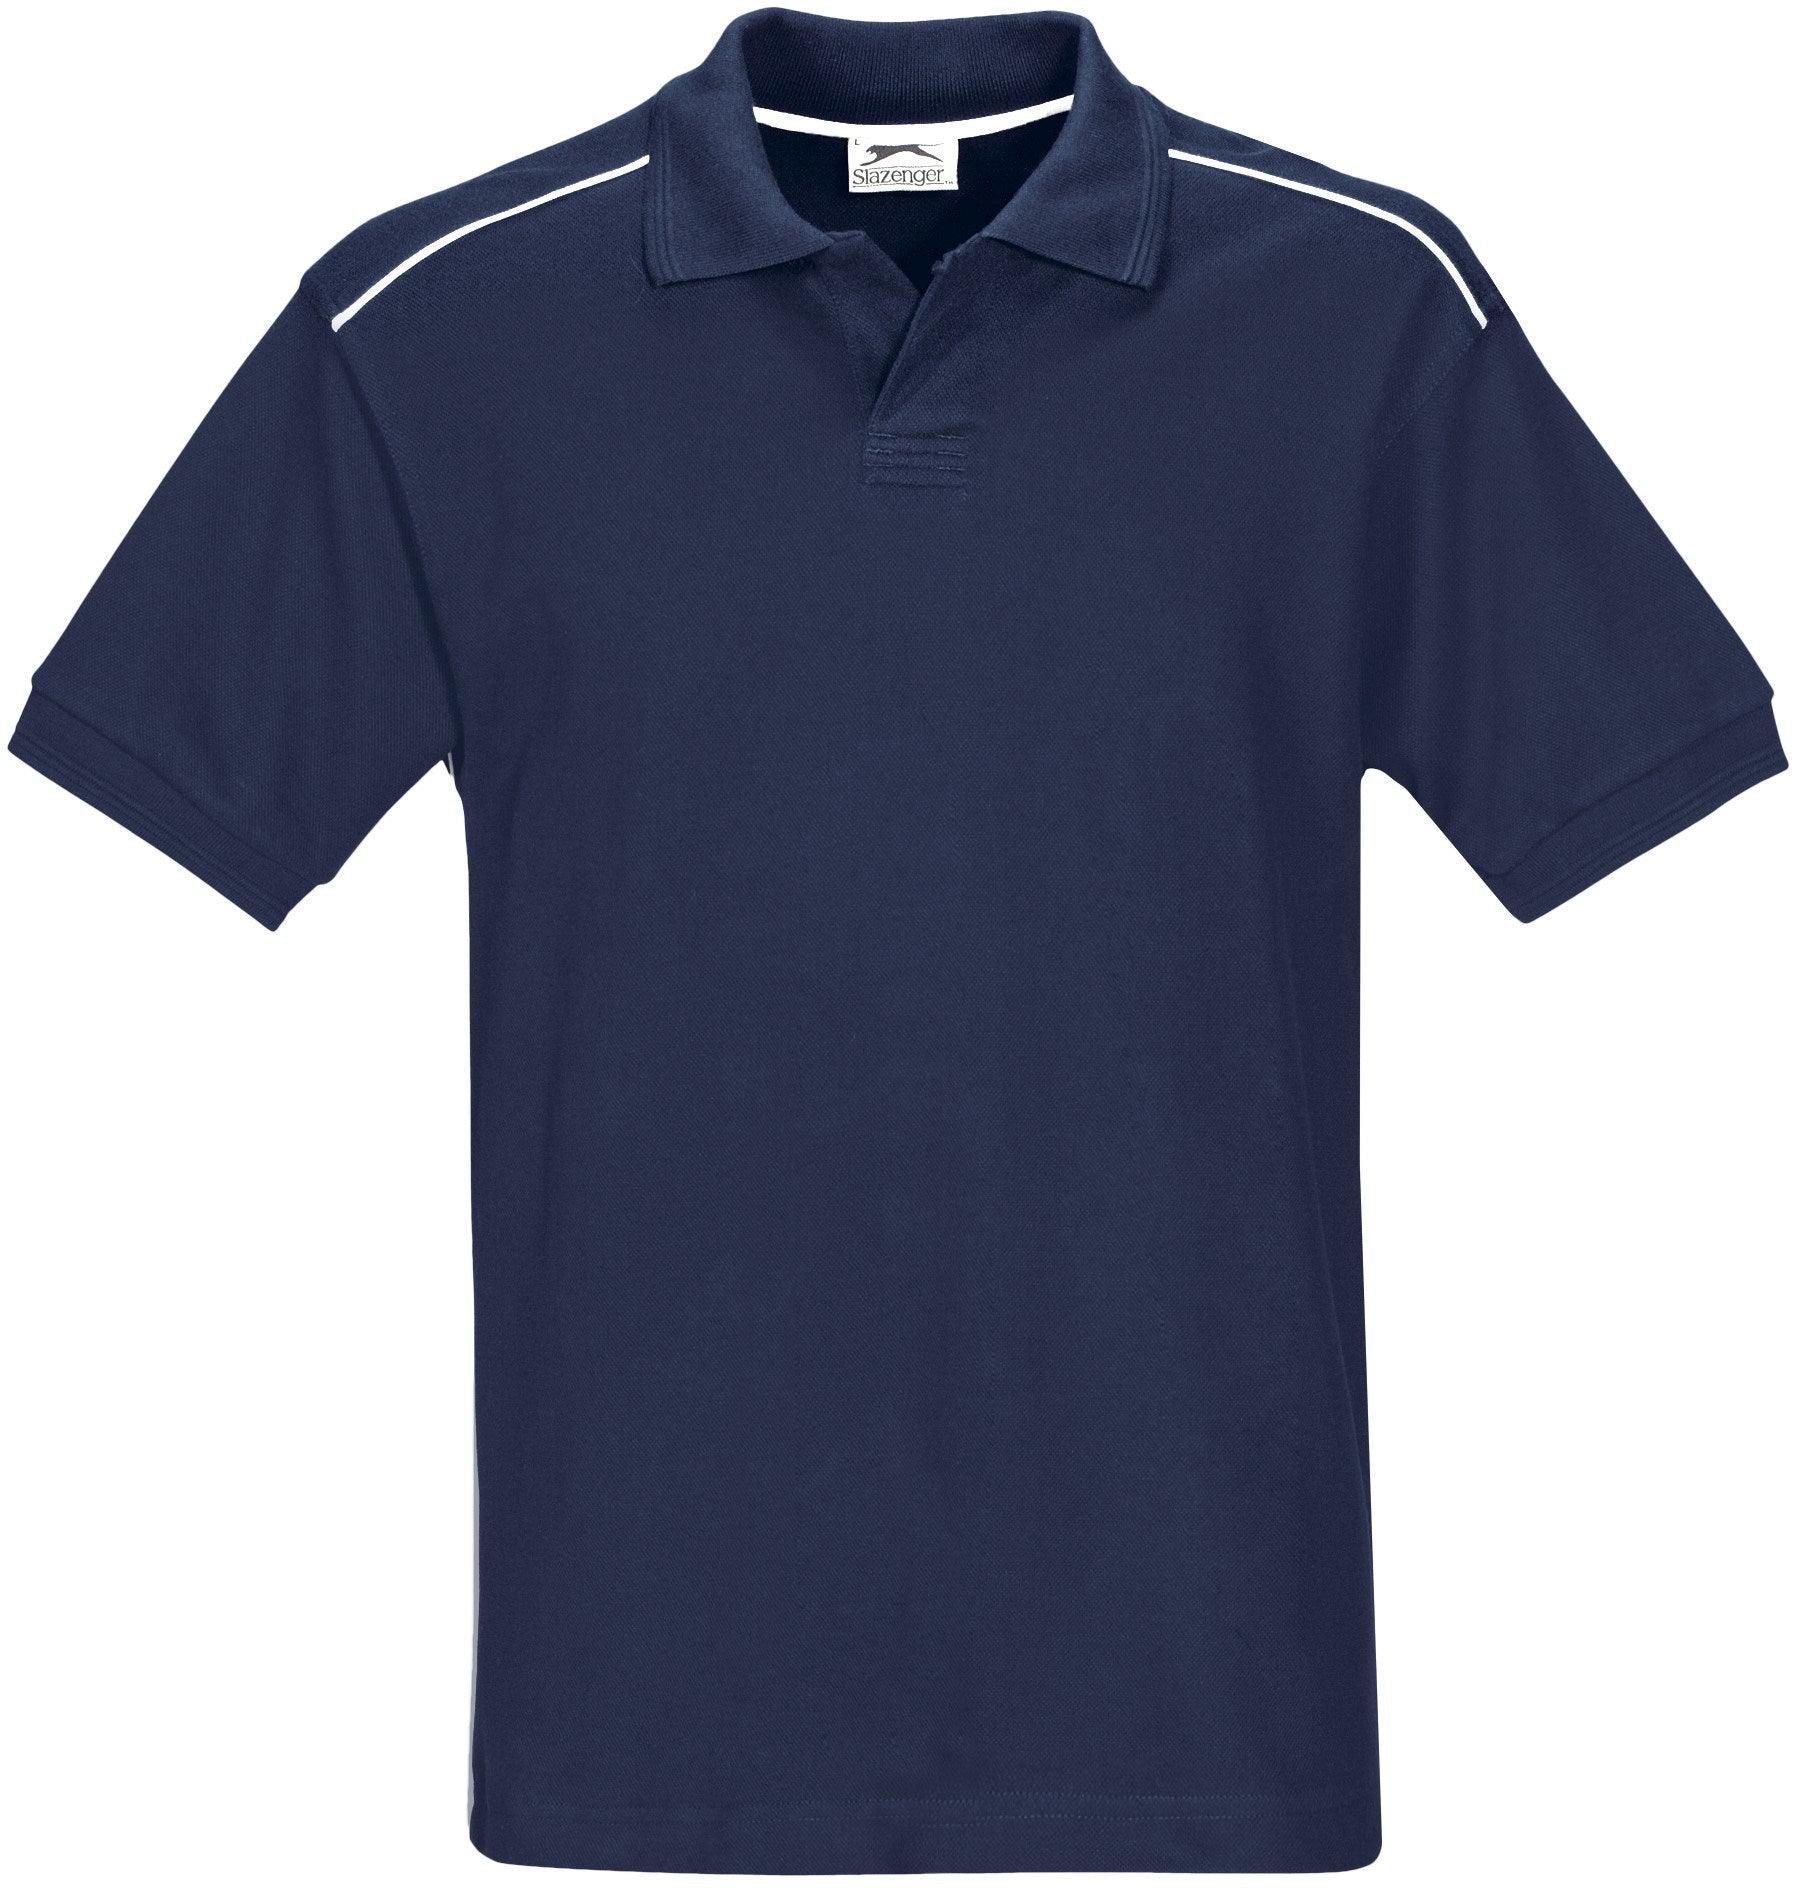 Mens Backhand Golf Shirt - Black Only-2XL-Navy-N